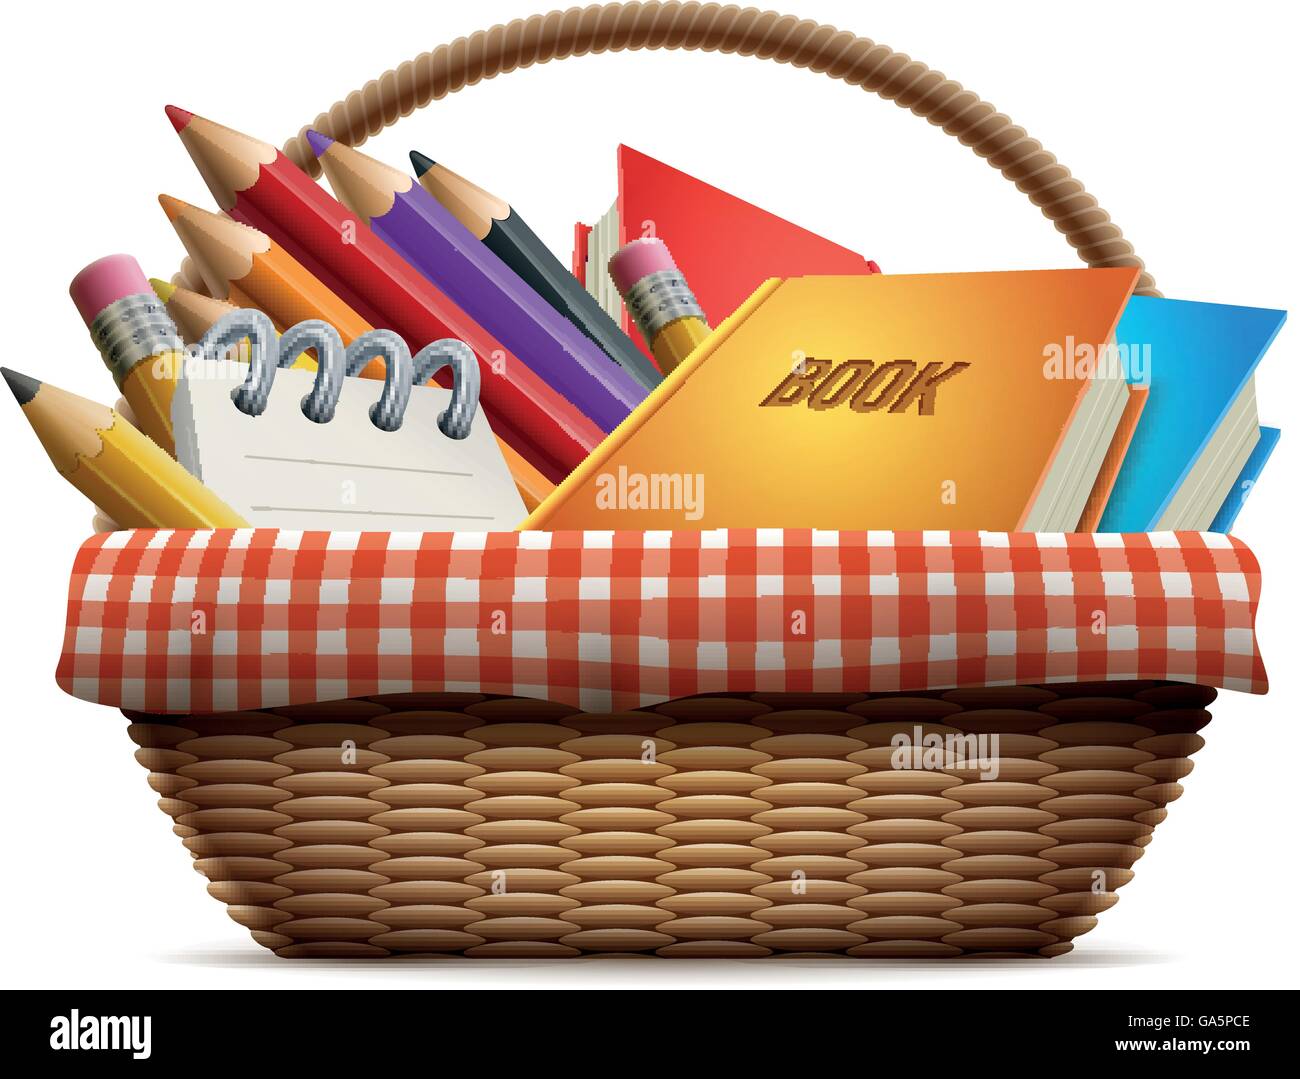 Forniture scolastiche in vimini cesto da picnic. Dettagliata illustrazione vettoriale. Illustrazione Vettoriale